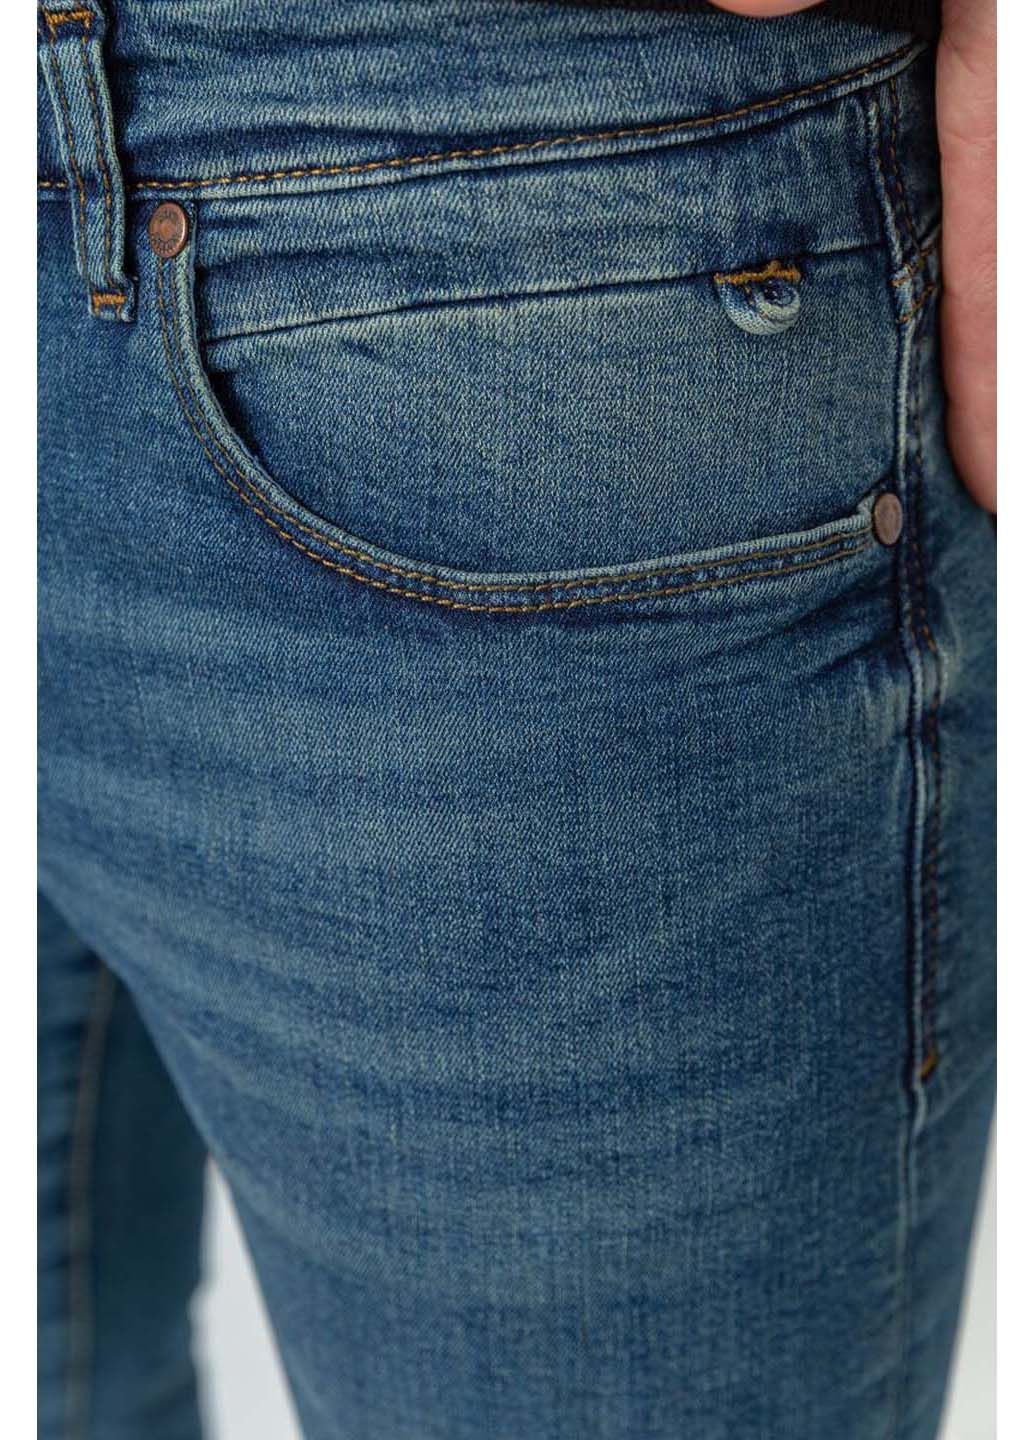 Комбинированные демисезонные джинсы Amitex